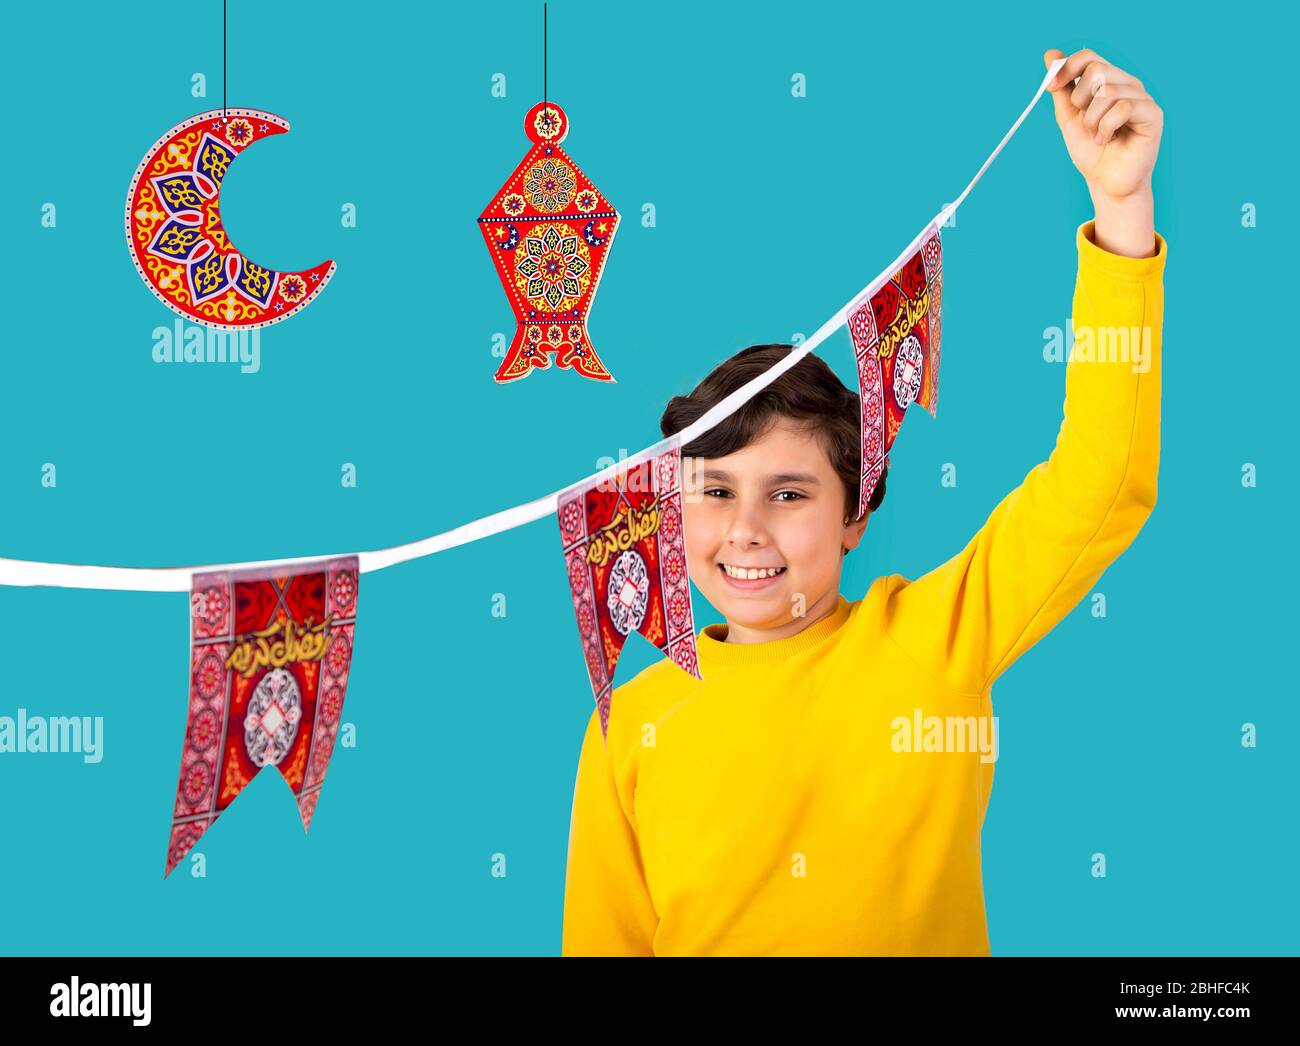 Musulmani Kid preparare decorazioni per celebrare il festival Ramadan -  lanterna , mezzaluna e carta forme islamiche con parola Ramadan Kareem -  traduzione Foto stock - Alamy